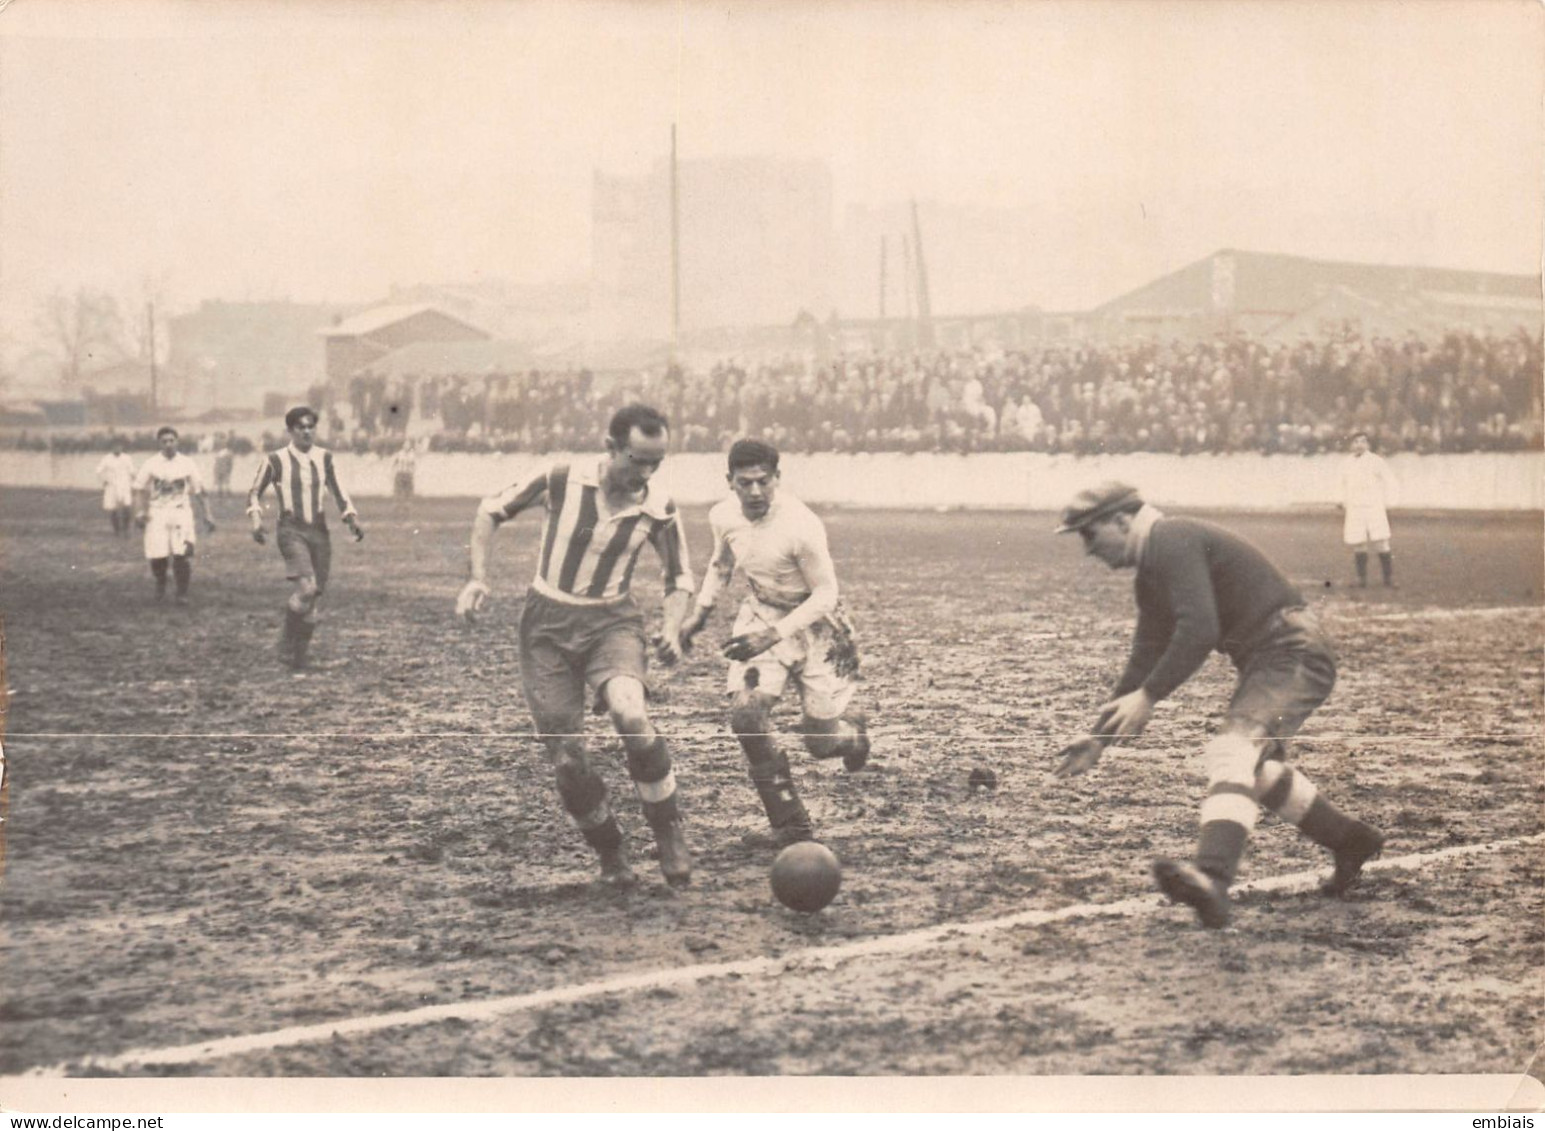 SAINT OUEN 1931 - Photo Originale D'un Match De Foot Entre Le Red Star Et L'AS Valentigney ( Club Du Doubs) - Sports